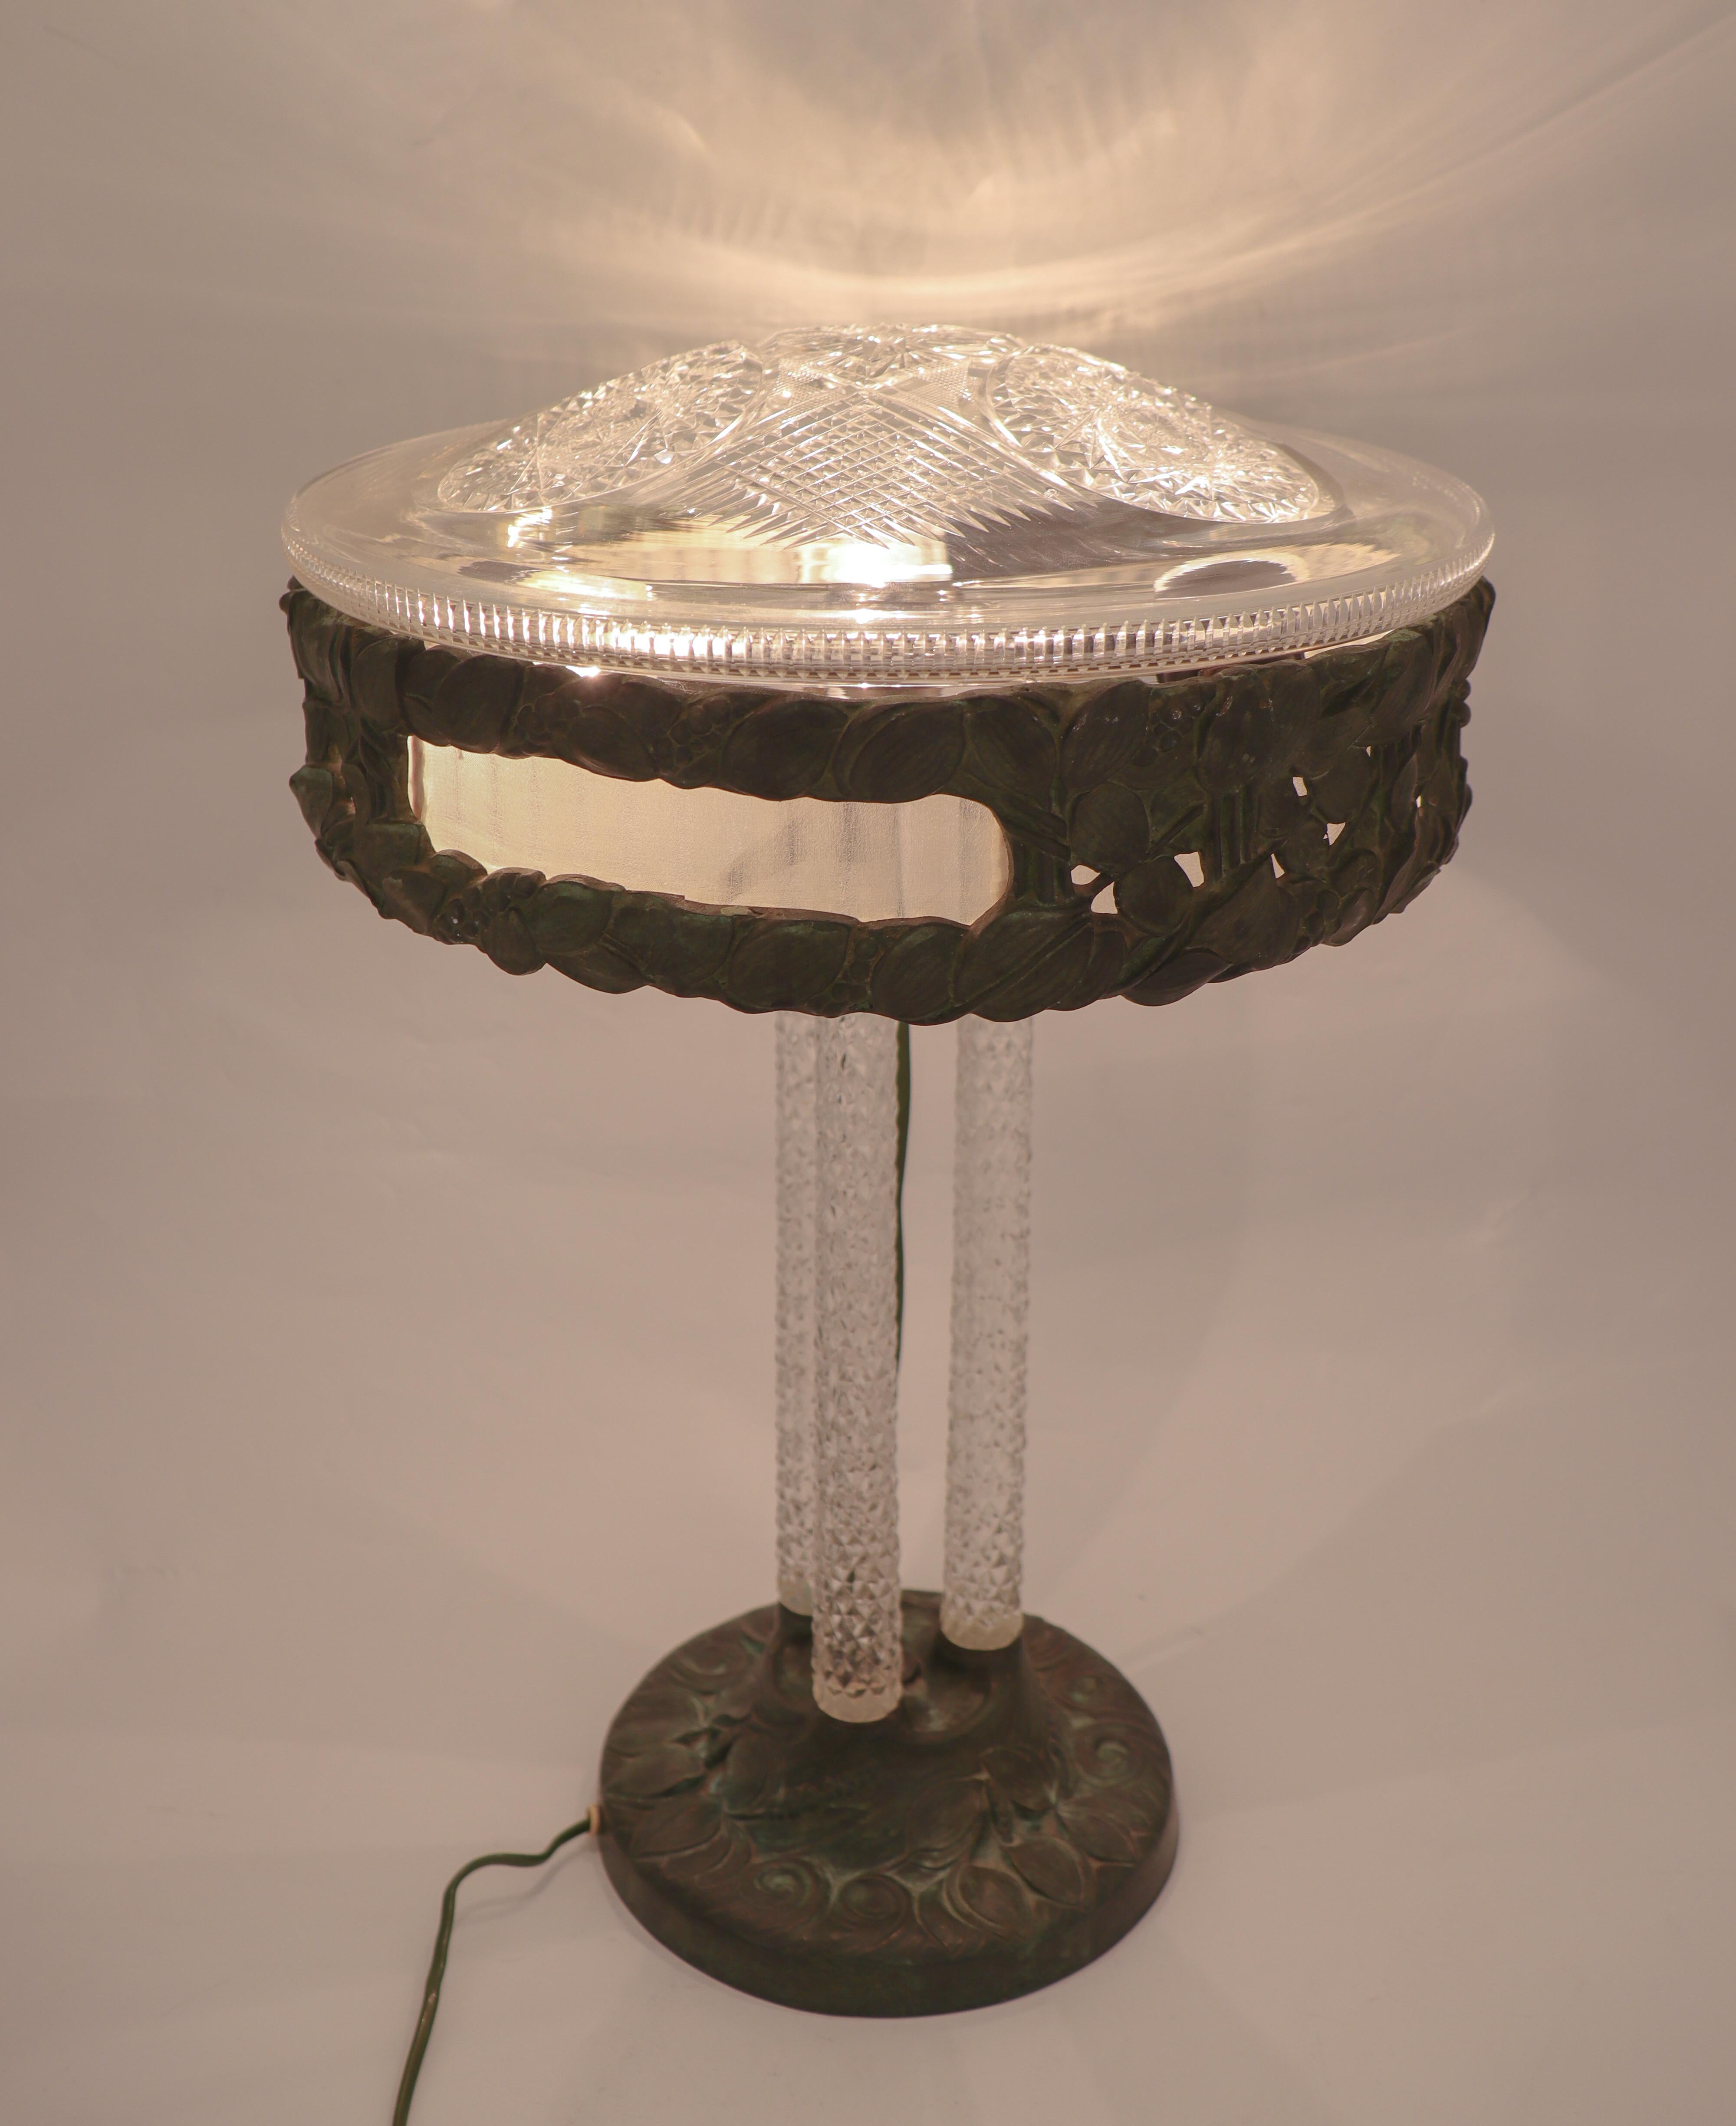 Eine beeindruckende und sehr seltene Tischlampe aus Arvid Böhlmarks Lampenfabrik in Stockholm. Diese Lampe wurde 1909 entworfen und hat einen Sockel und einen Deckel aus Bronze, wunderschöne Kristallsäulen und einen Lampenschirm aus Kristall. Die